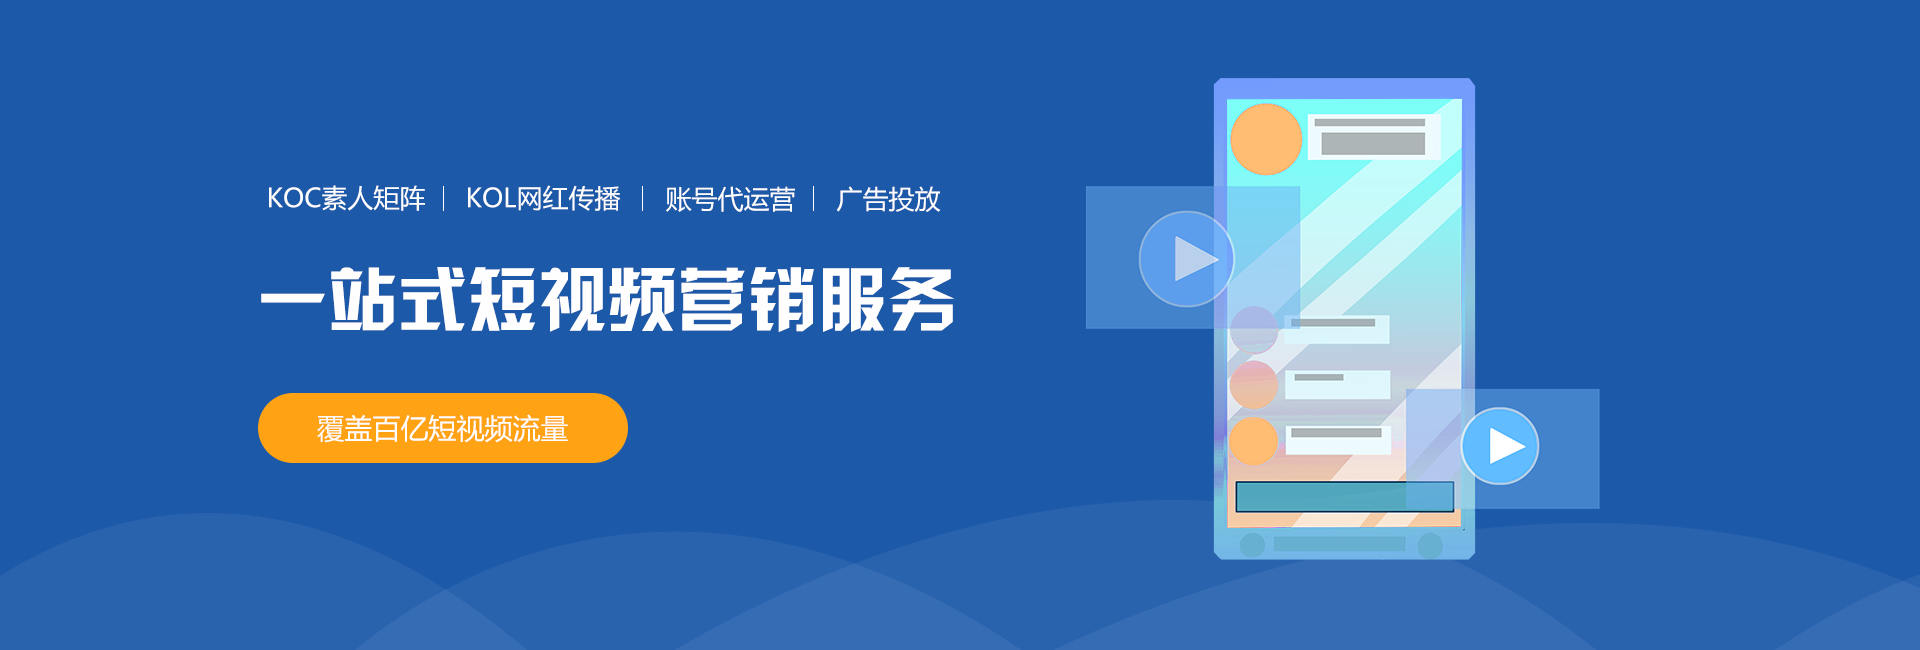 上海假期公关整合传播,短视频营销营销,短视频引流,短视频营销如何营销,短视频营销营销到底怎么做呢